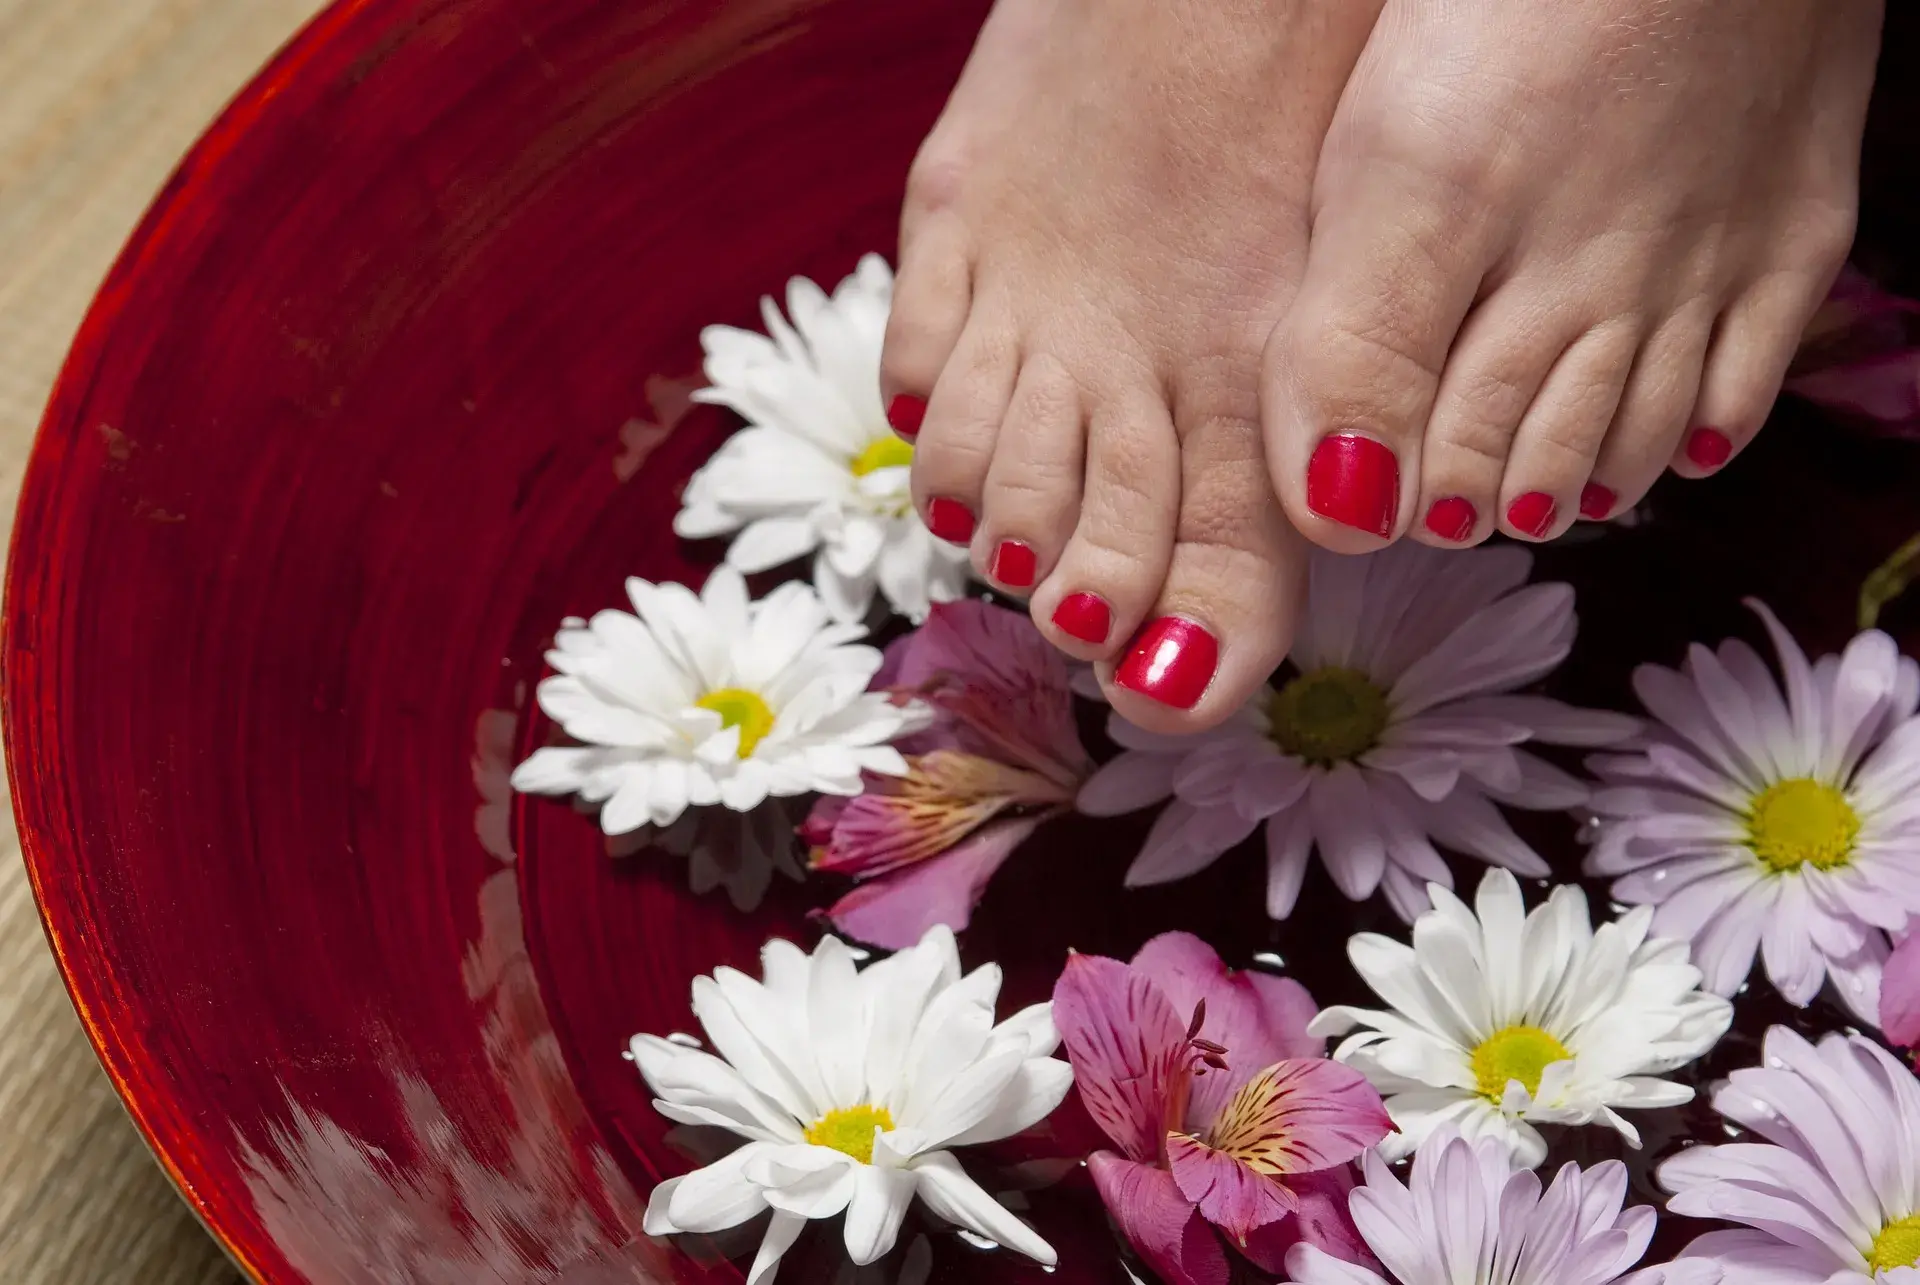 Crveno lakirani nokti na nogama iznad posude sa vodom i cvijećem